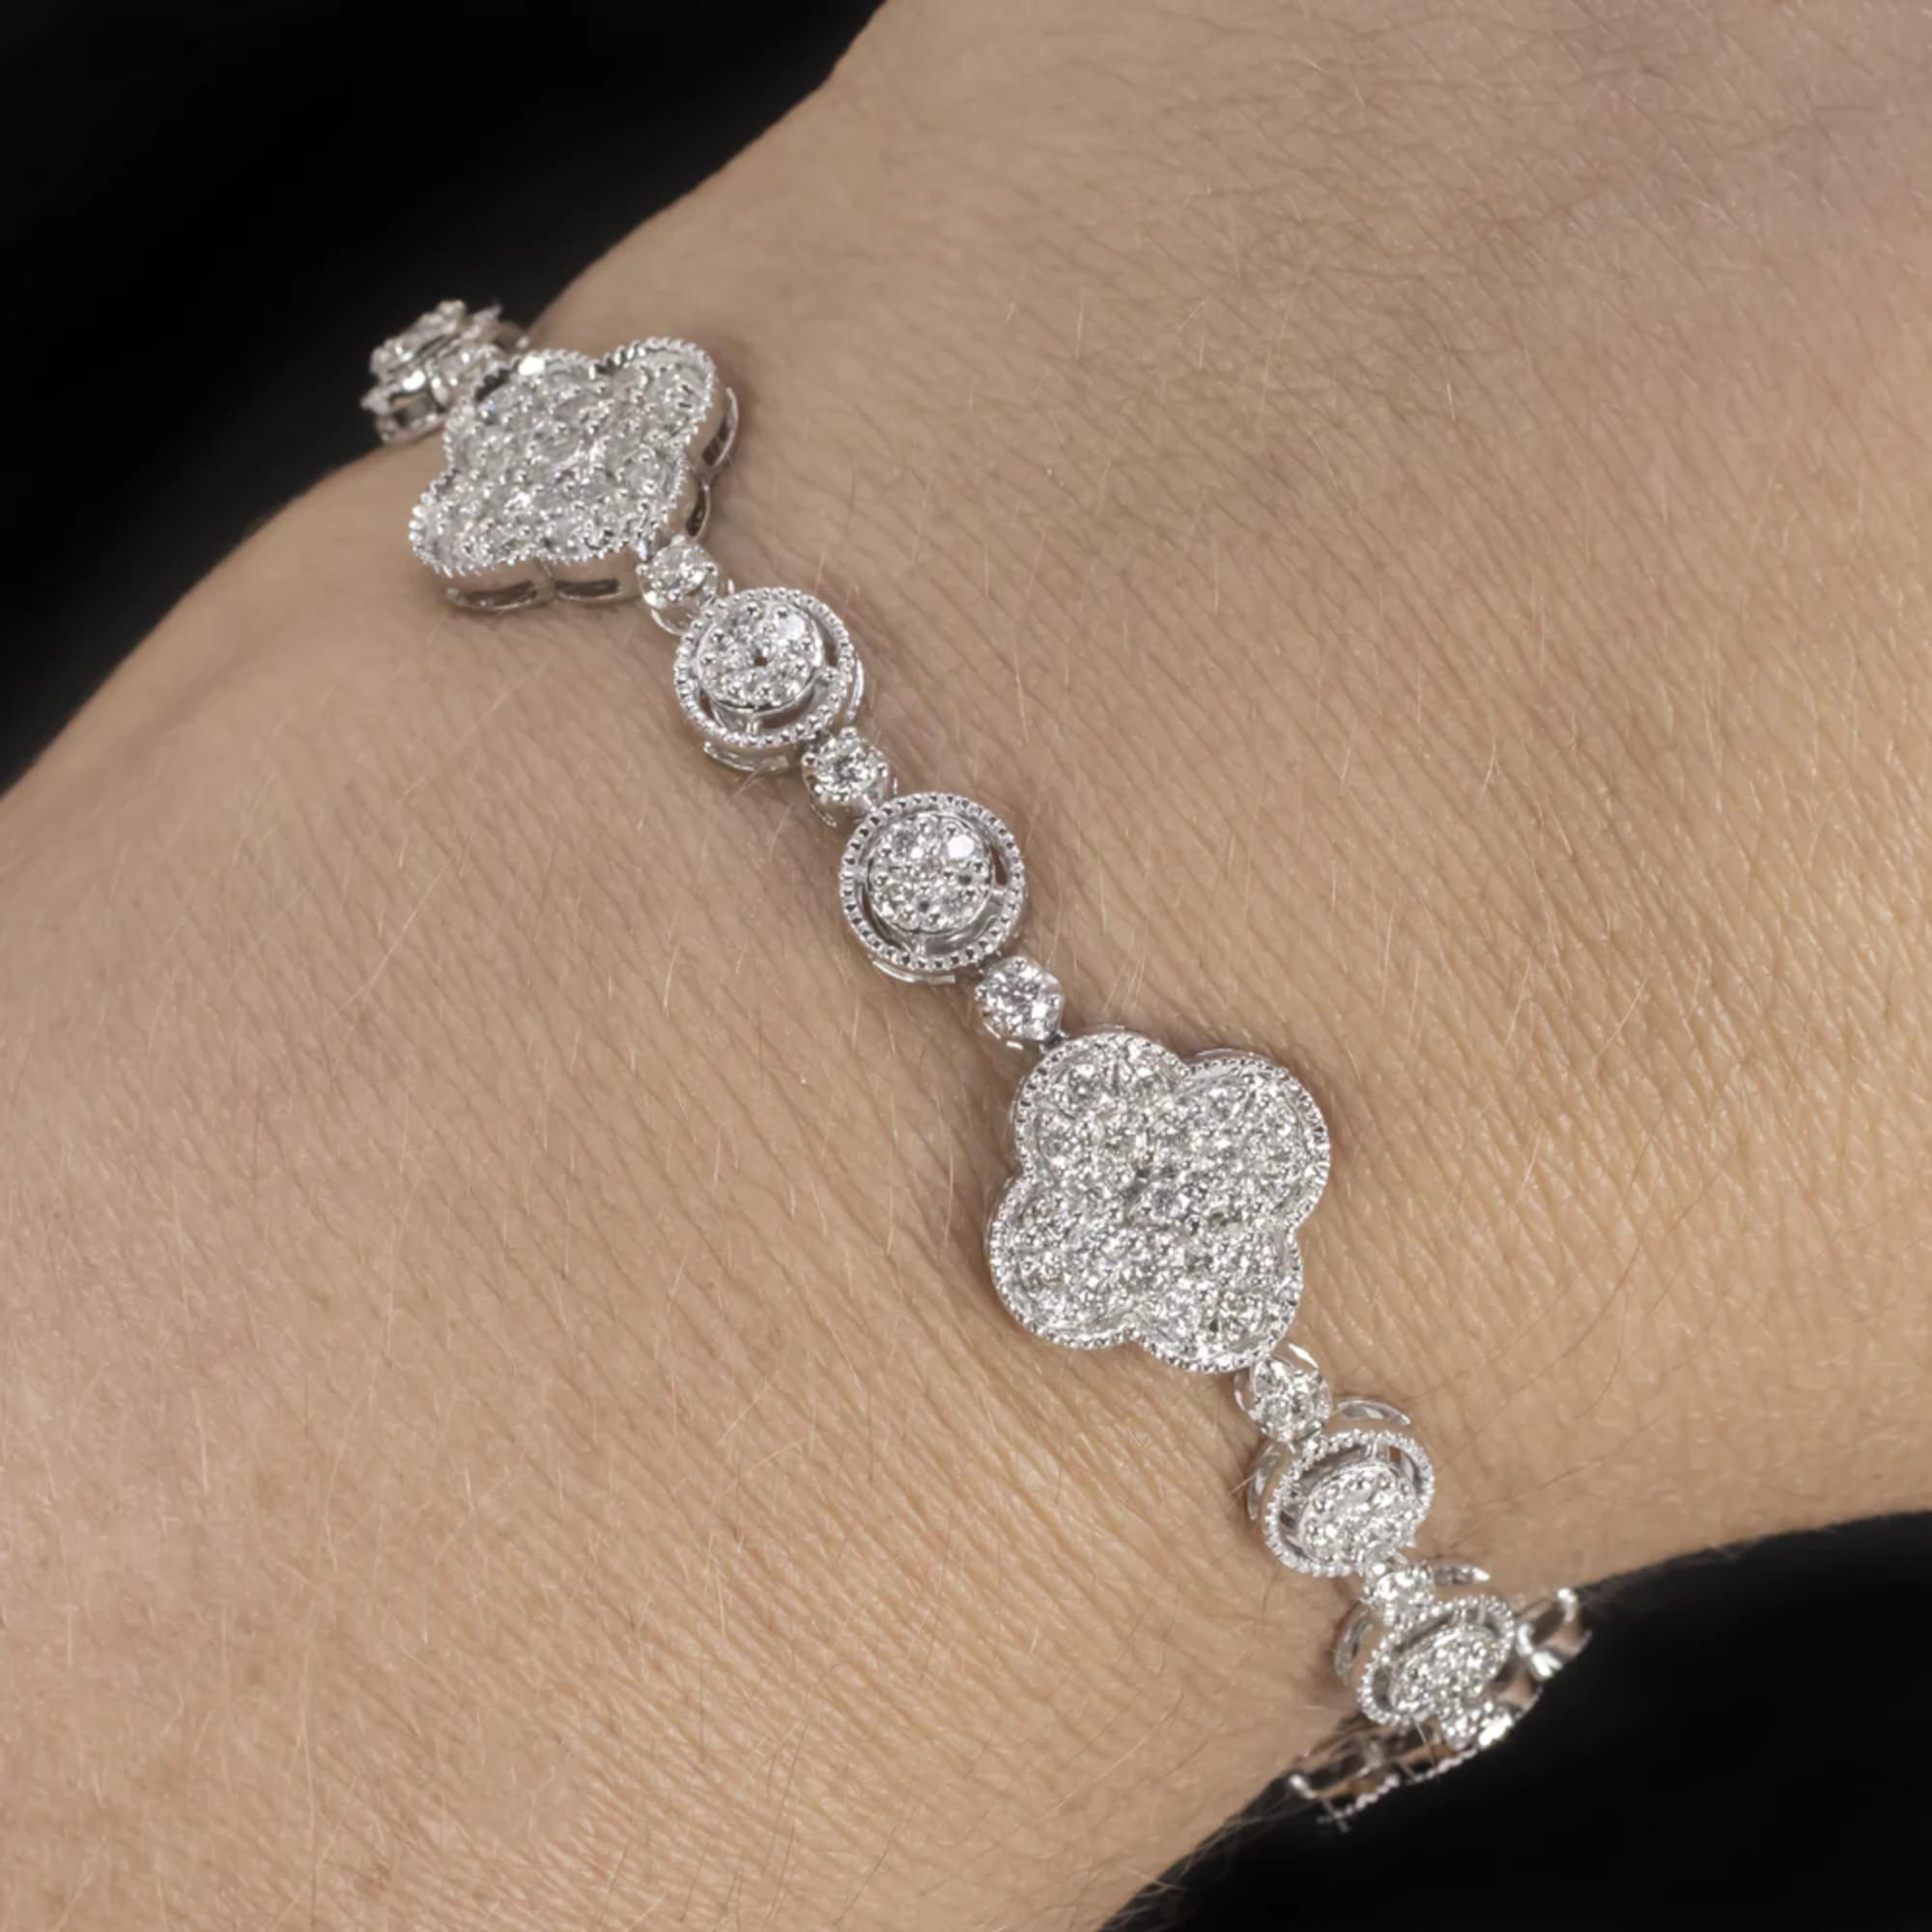 Wir präsentieren unser atemberaubendes Diamantarmband, ein wahres Meisterwerk an Eleganz und Glamour. Dieses exquisite Stück ist kunstvoll gefertigt, um das Auge zu fesseln und das Herz zu erobern. Sein einzigartiges Design zeichnet sich durch eine